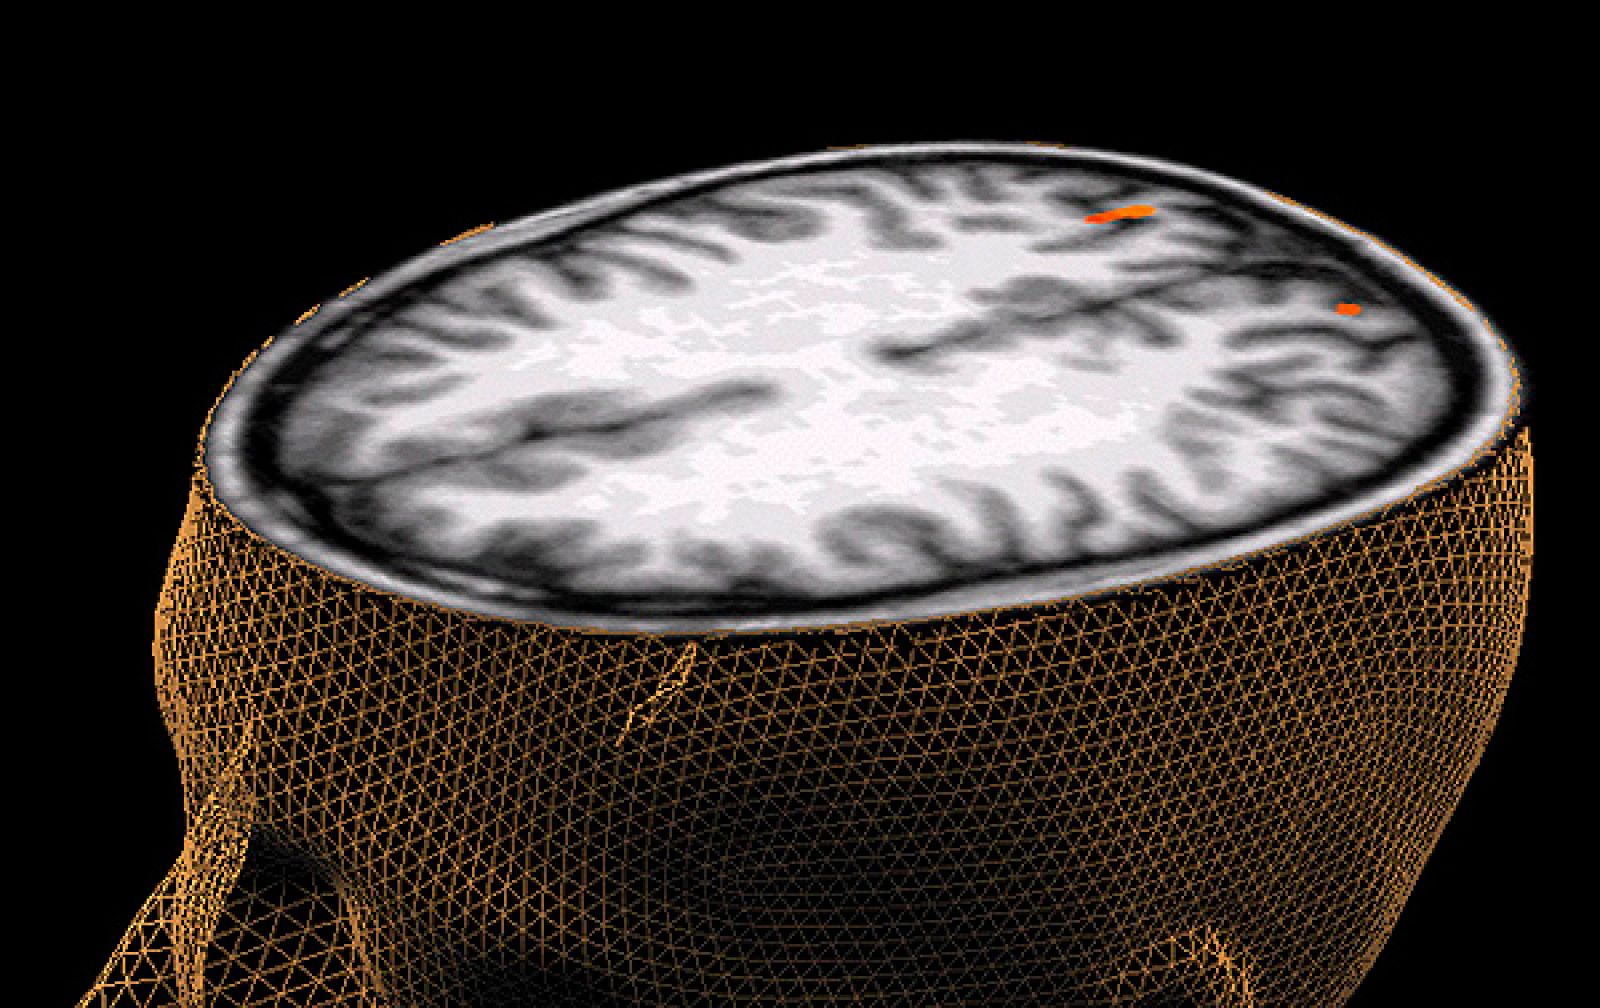 Las donaciones de cerebro, esenciales para la investigación